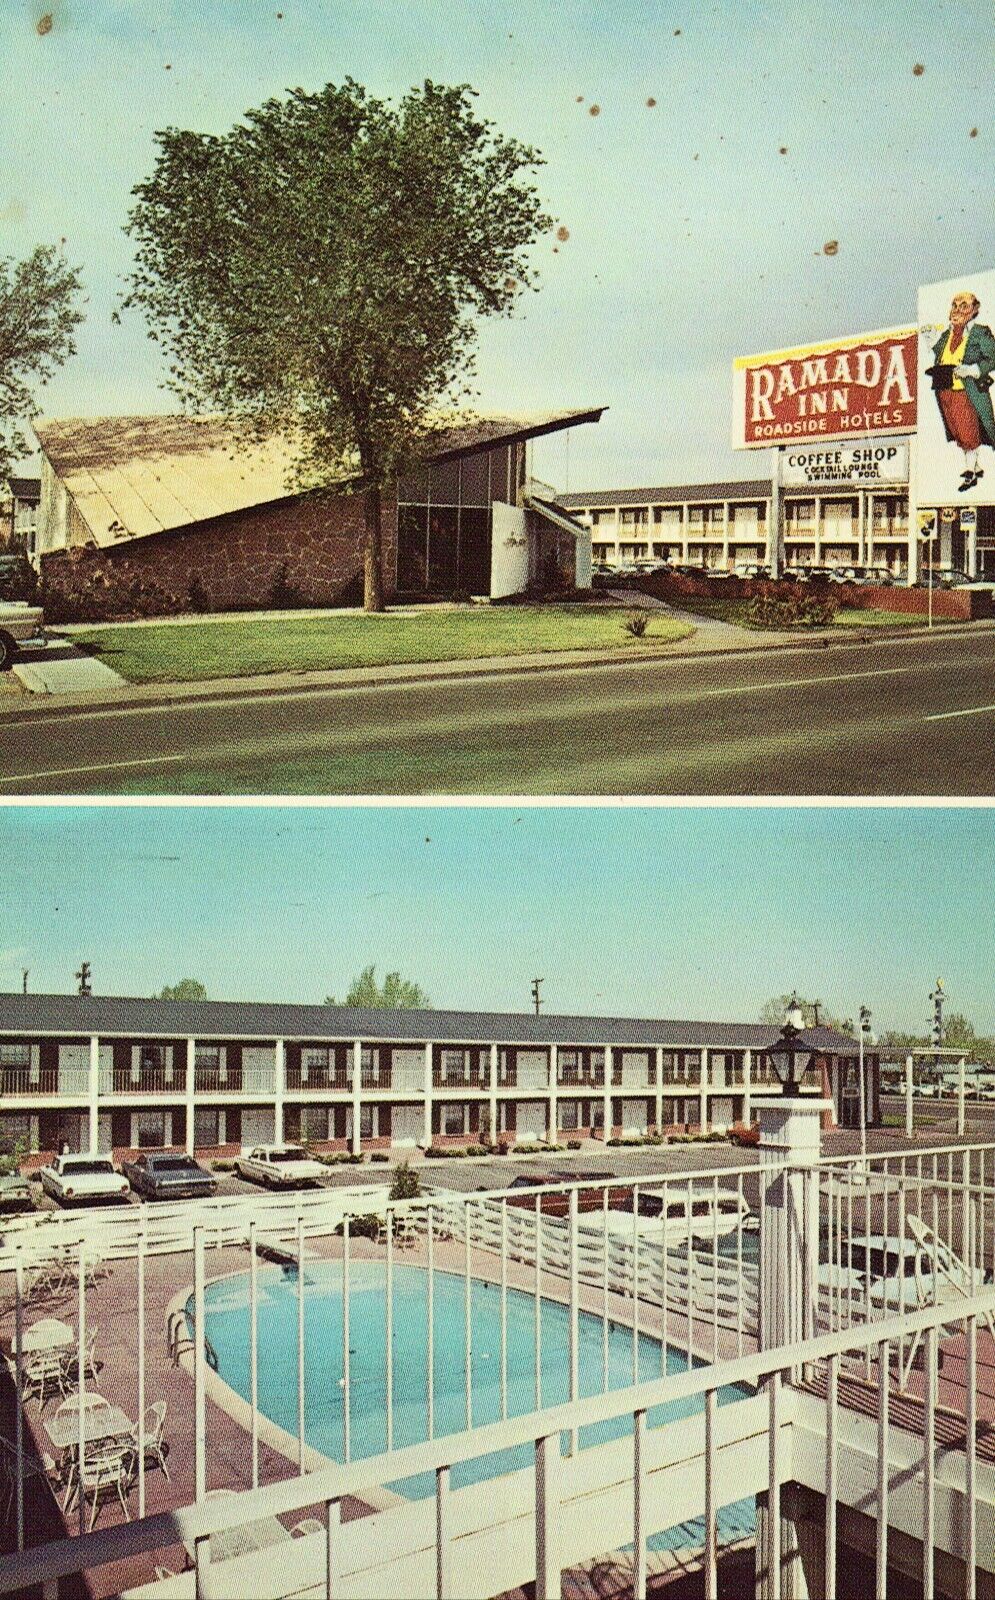 Ramada Inn of Denver West - Denver, Colorado Vintage Postcard Old Cars